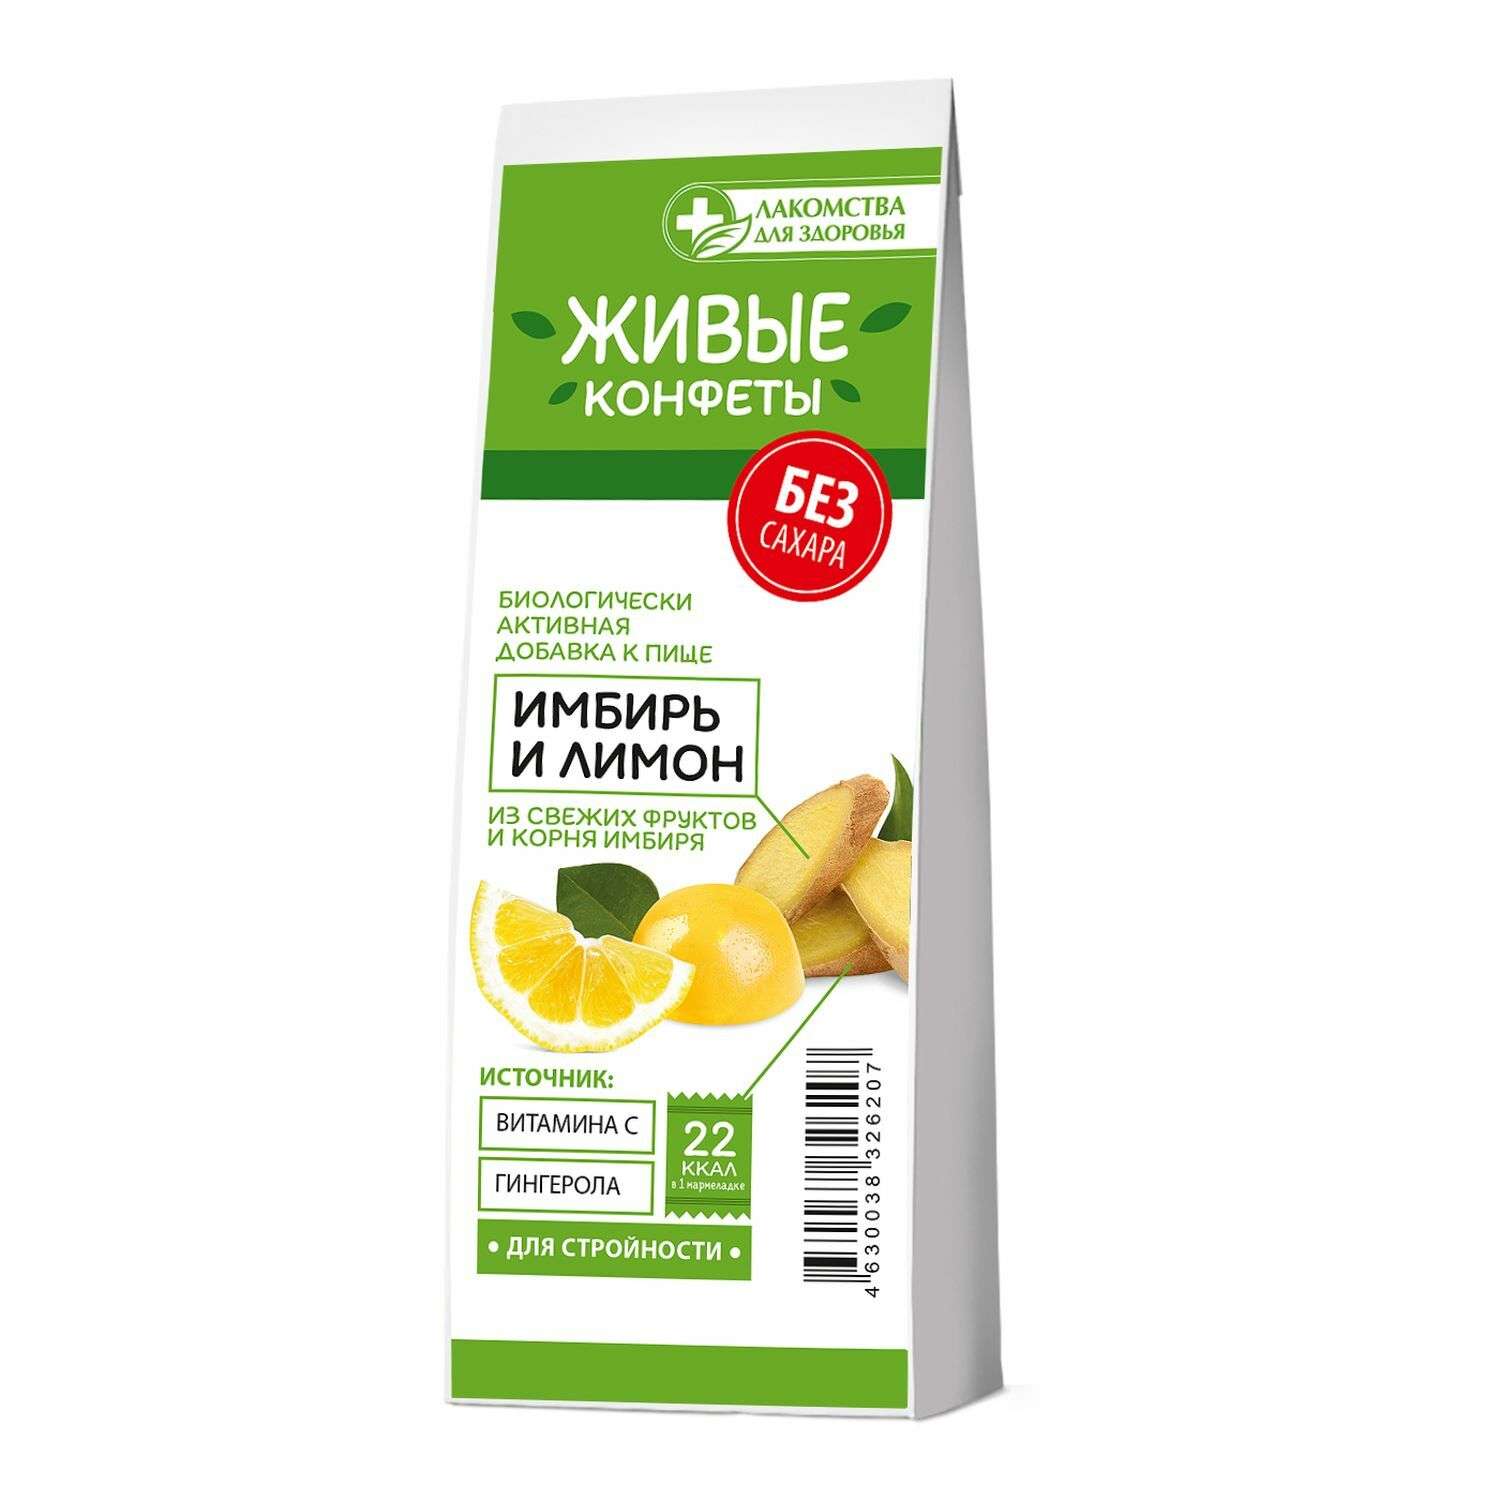 Биологически активная добавка Лакомства для здоровья мармелад имбирь-лимон 105г - фото 1